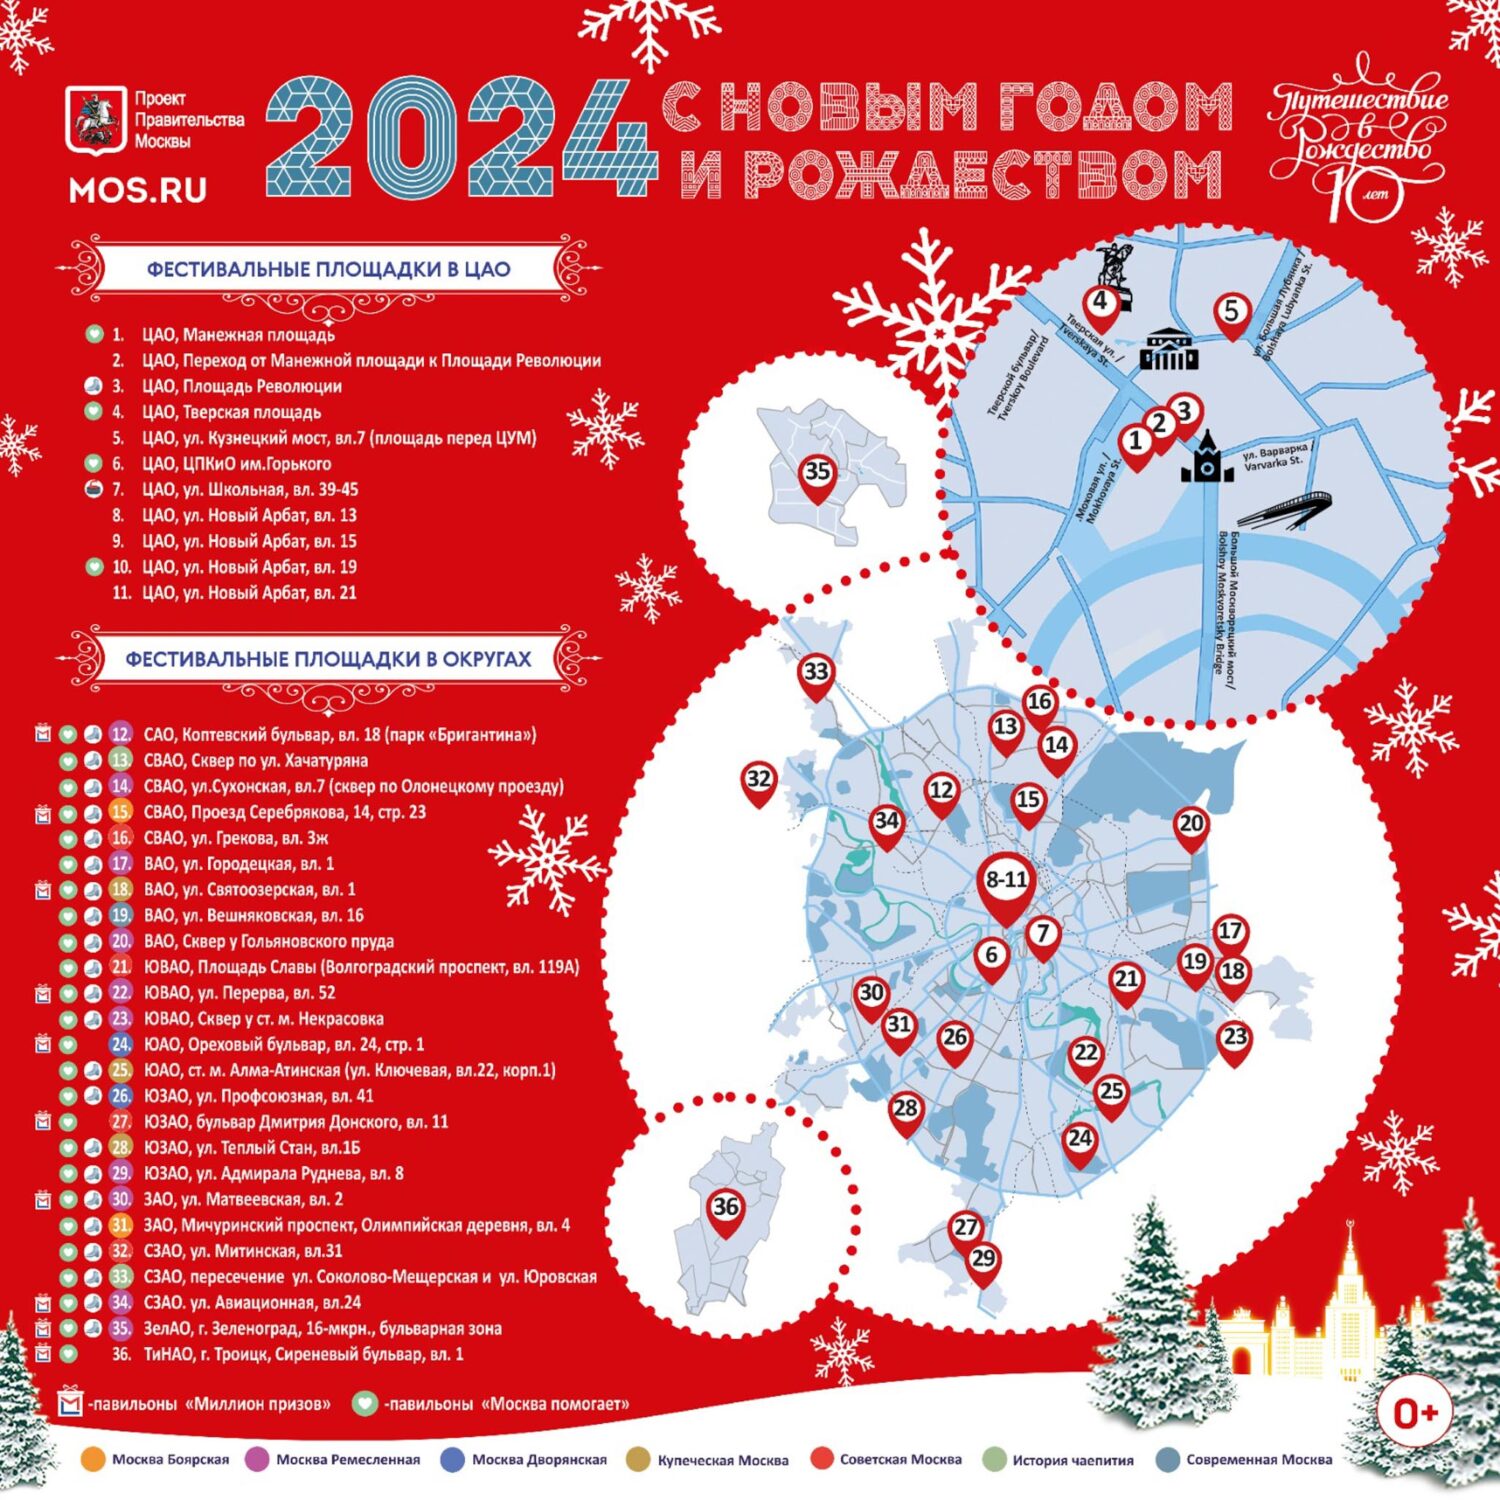 Почти 40 площадок подготовлено в Москве для фестиваля "Путешествие в Рождество"